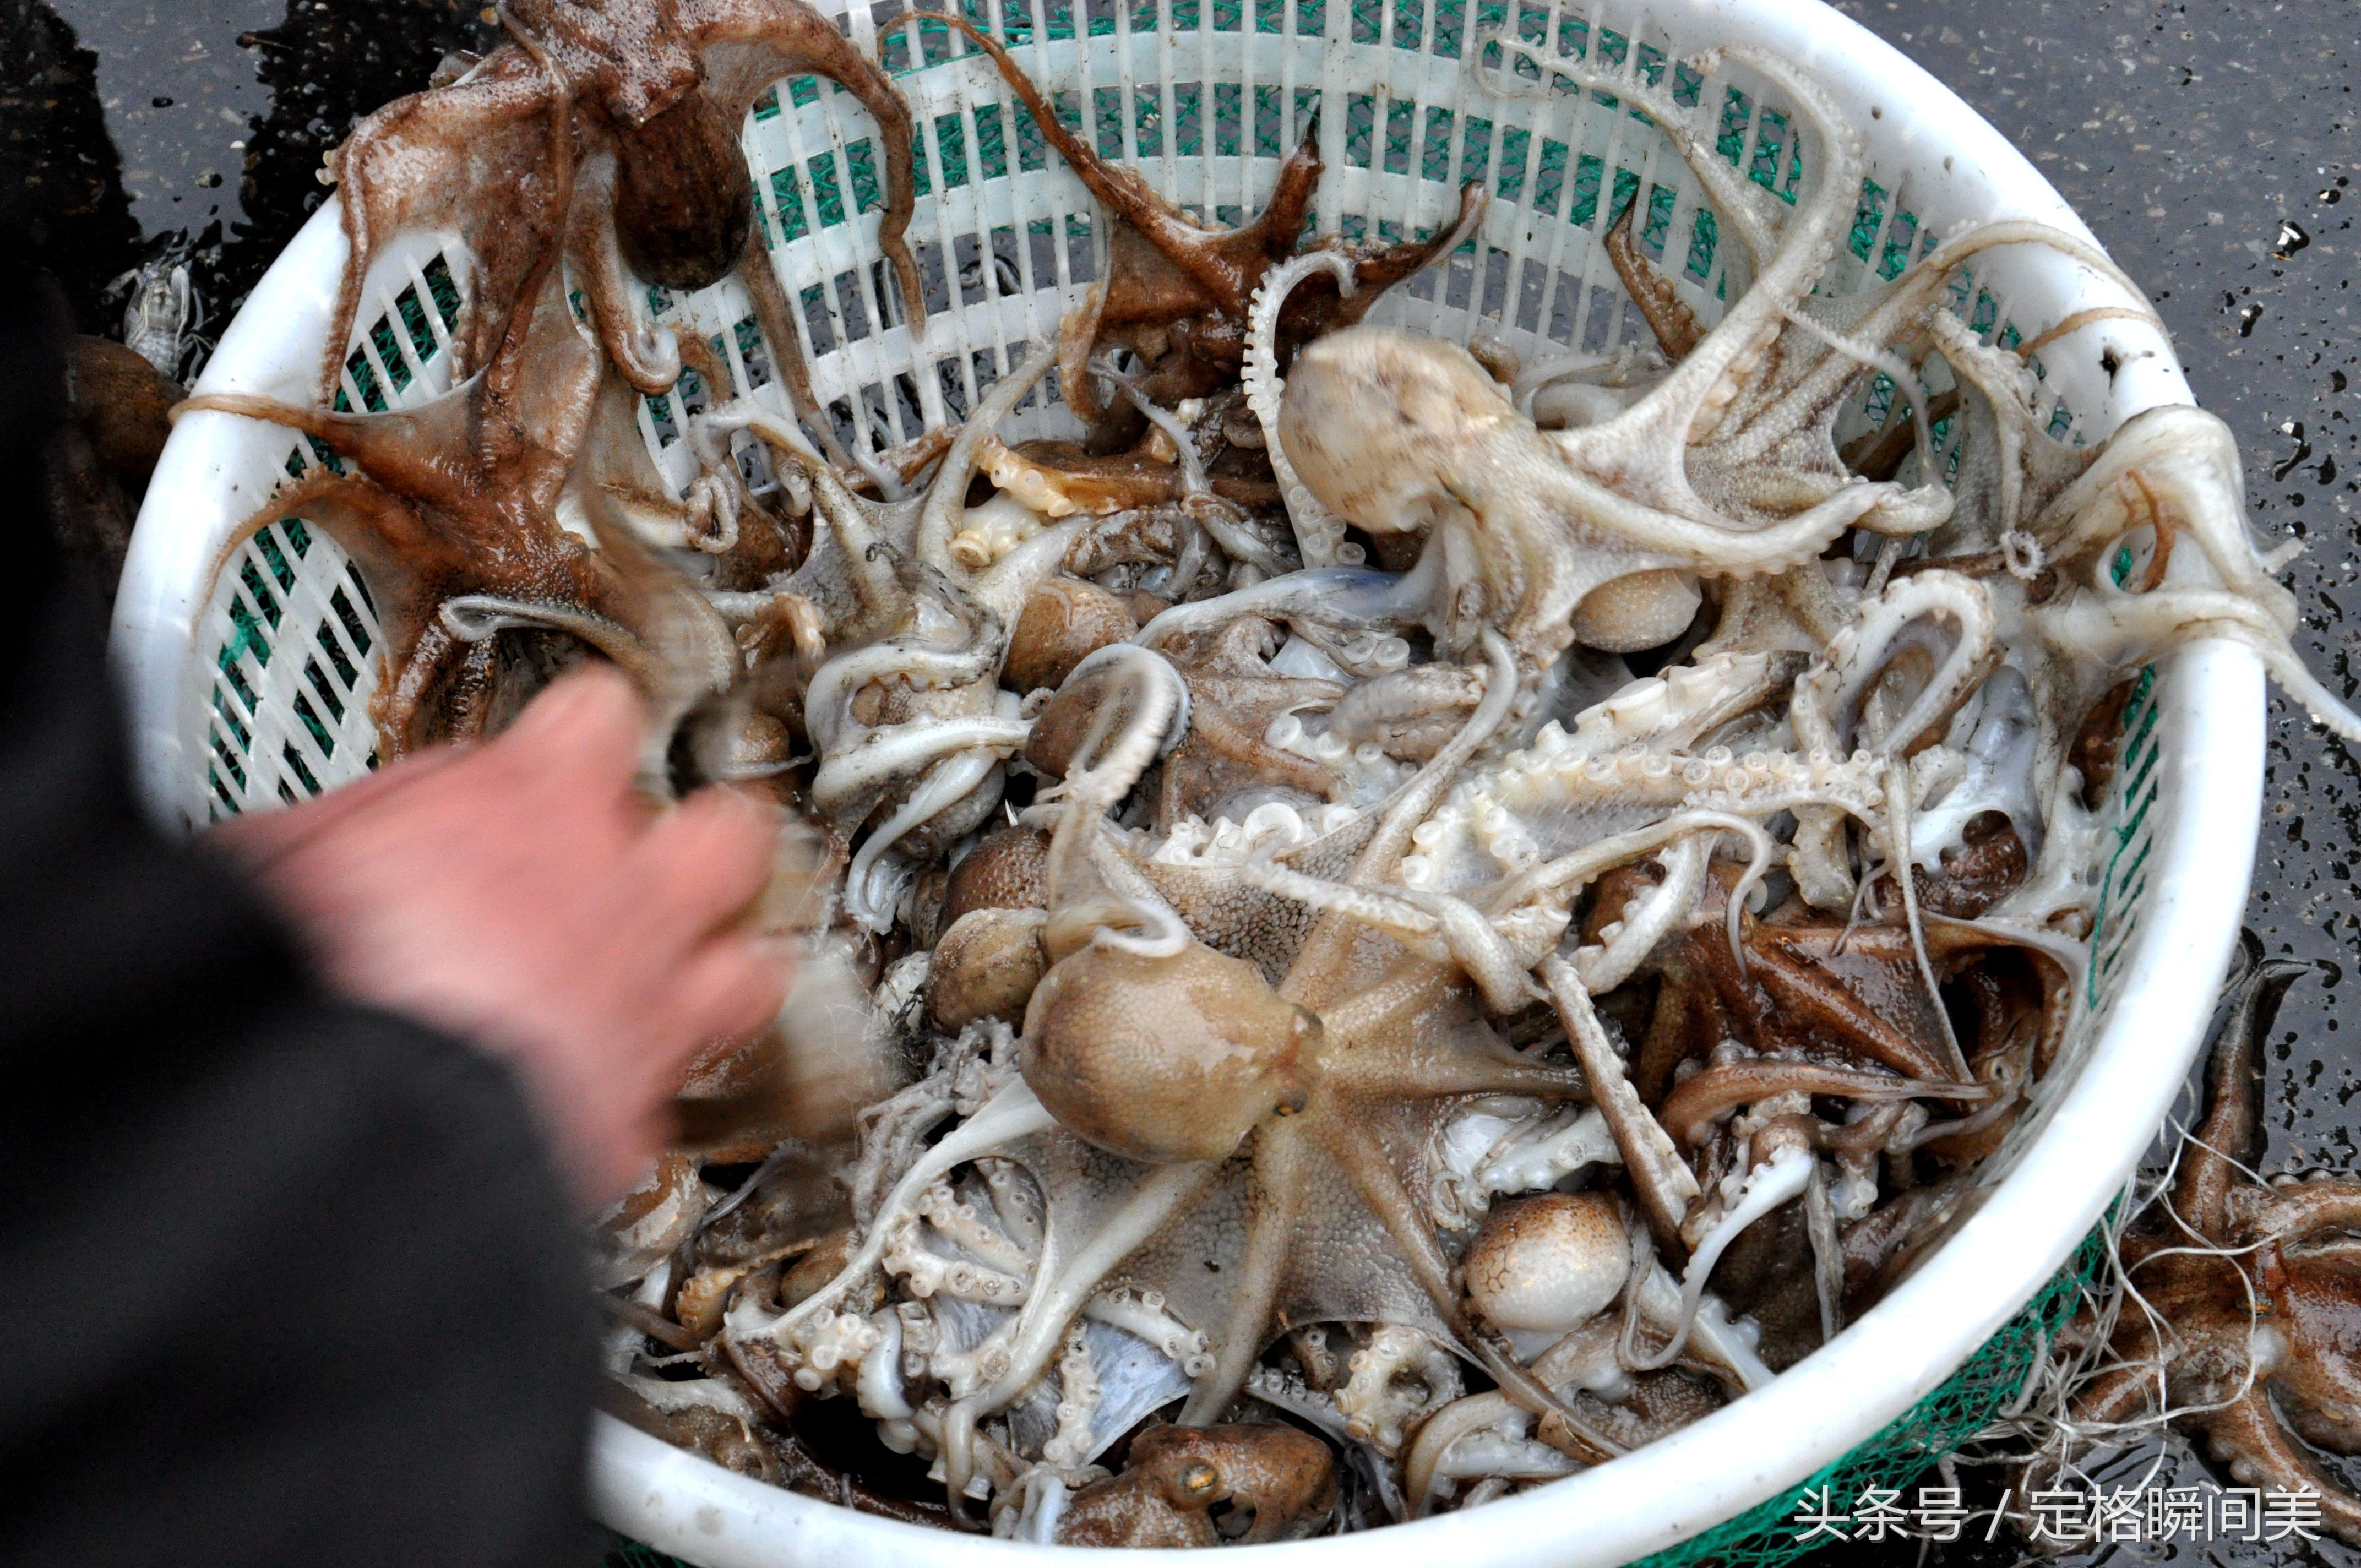 青岛四月吃海鲜 八带鮹肥硕正当时38一斤 大妈捡漏30一斤带籽